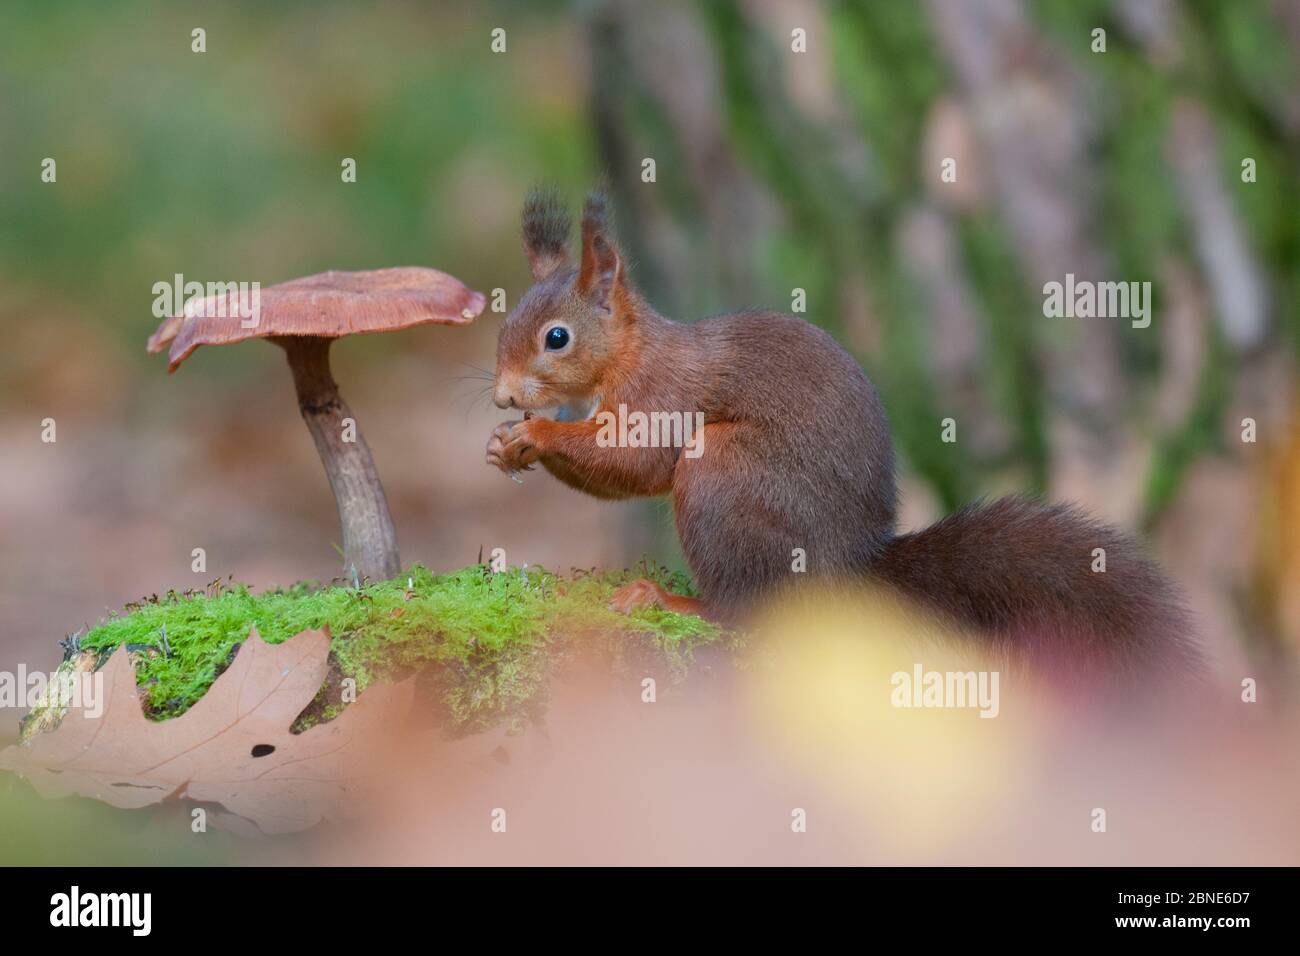 Squirrel Rojo (Sciurus vulgaris) alimentándose, sentado en musgo junto a hongos, Holanda, Octubre. Foto de stock